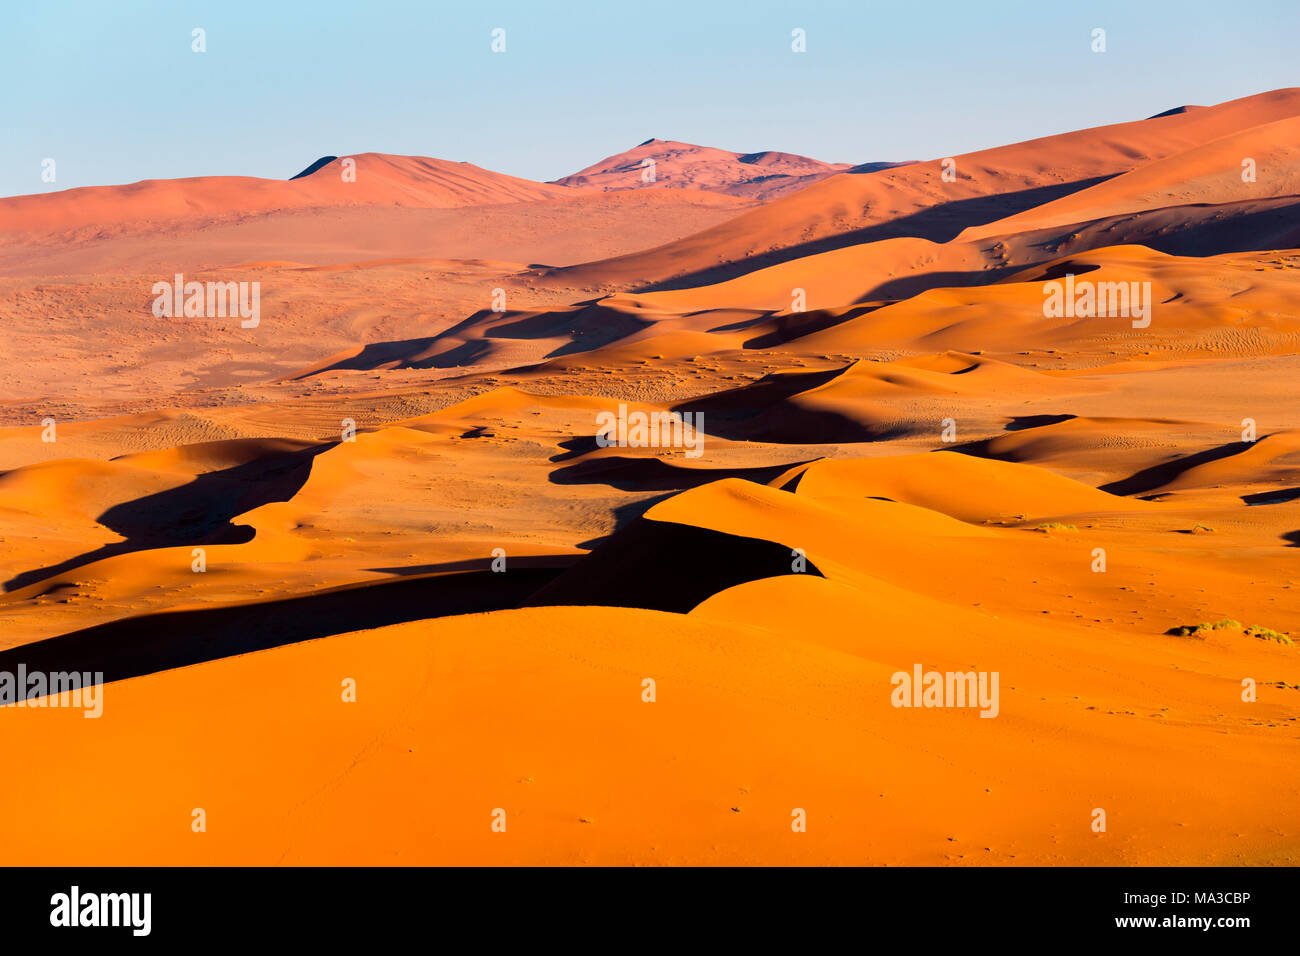 Sossusvlei, Namib desert, sand dunes during the golden hour. Namibia, Africa Stock Photo